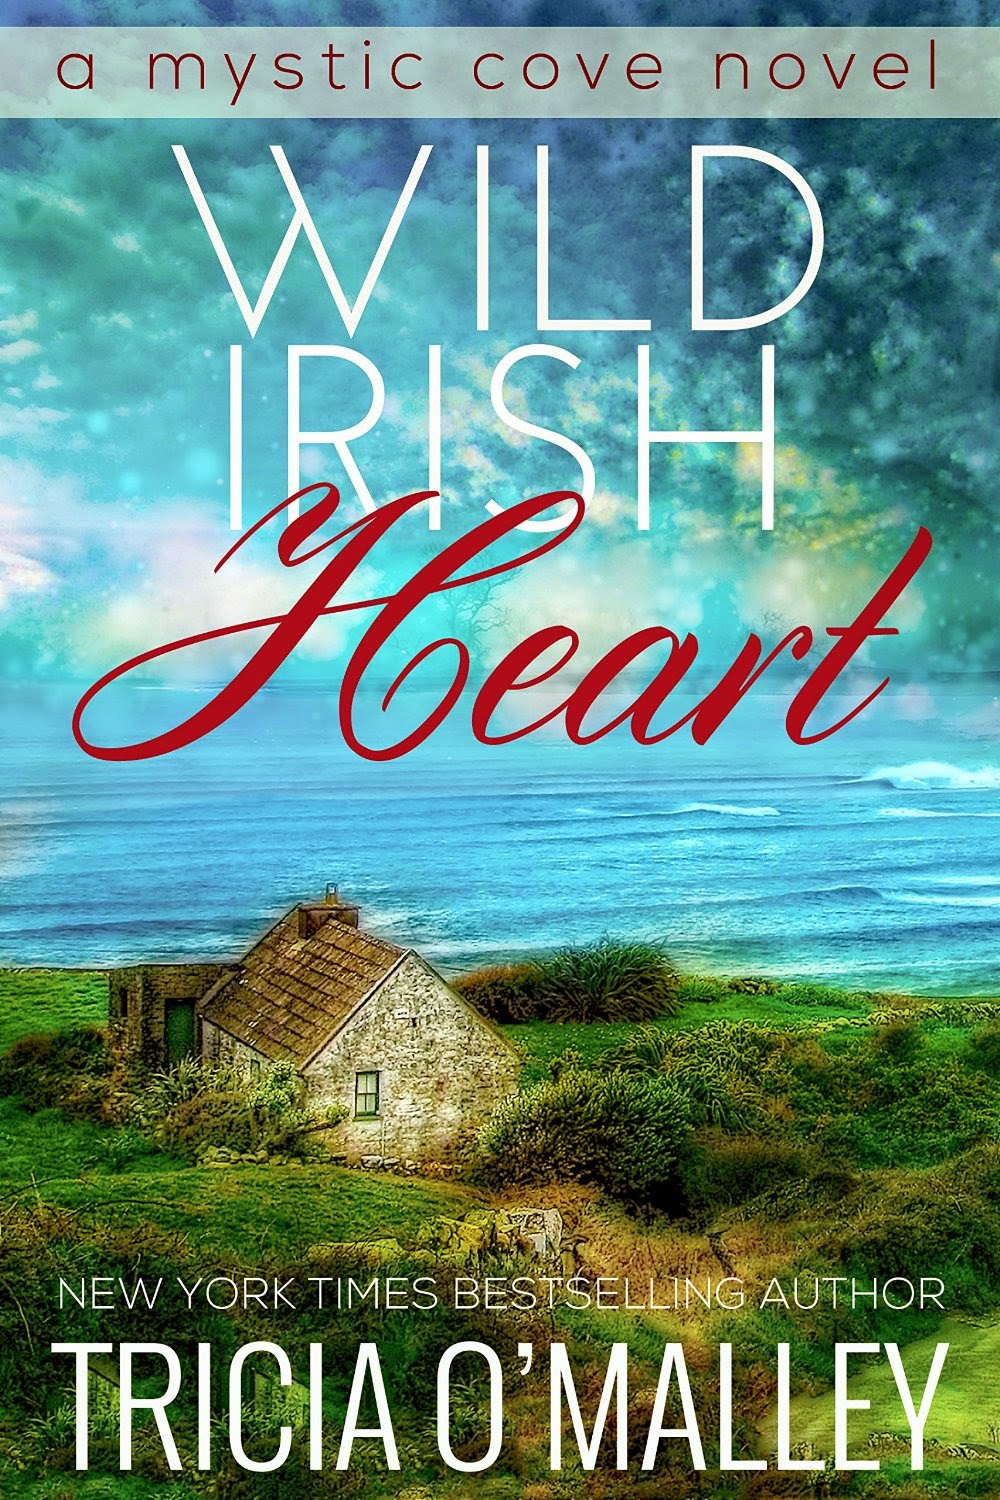 http://www.amazon.com/Wild-Irish-Heart-Mystic-Cove-ebook/dp/B00NJ0Q0SY/ref=sr_1_1?s=digital-text&ie=UTF8&qid=1422140238&sr=1-1&keywords=wild+irish+heart